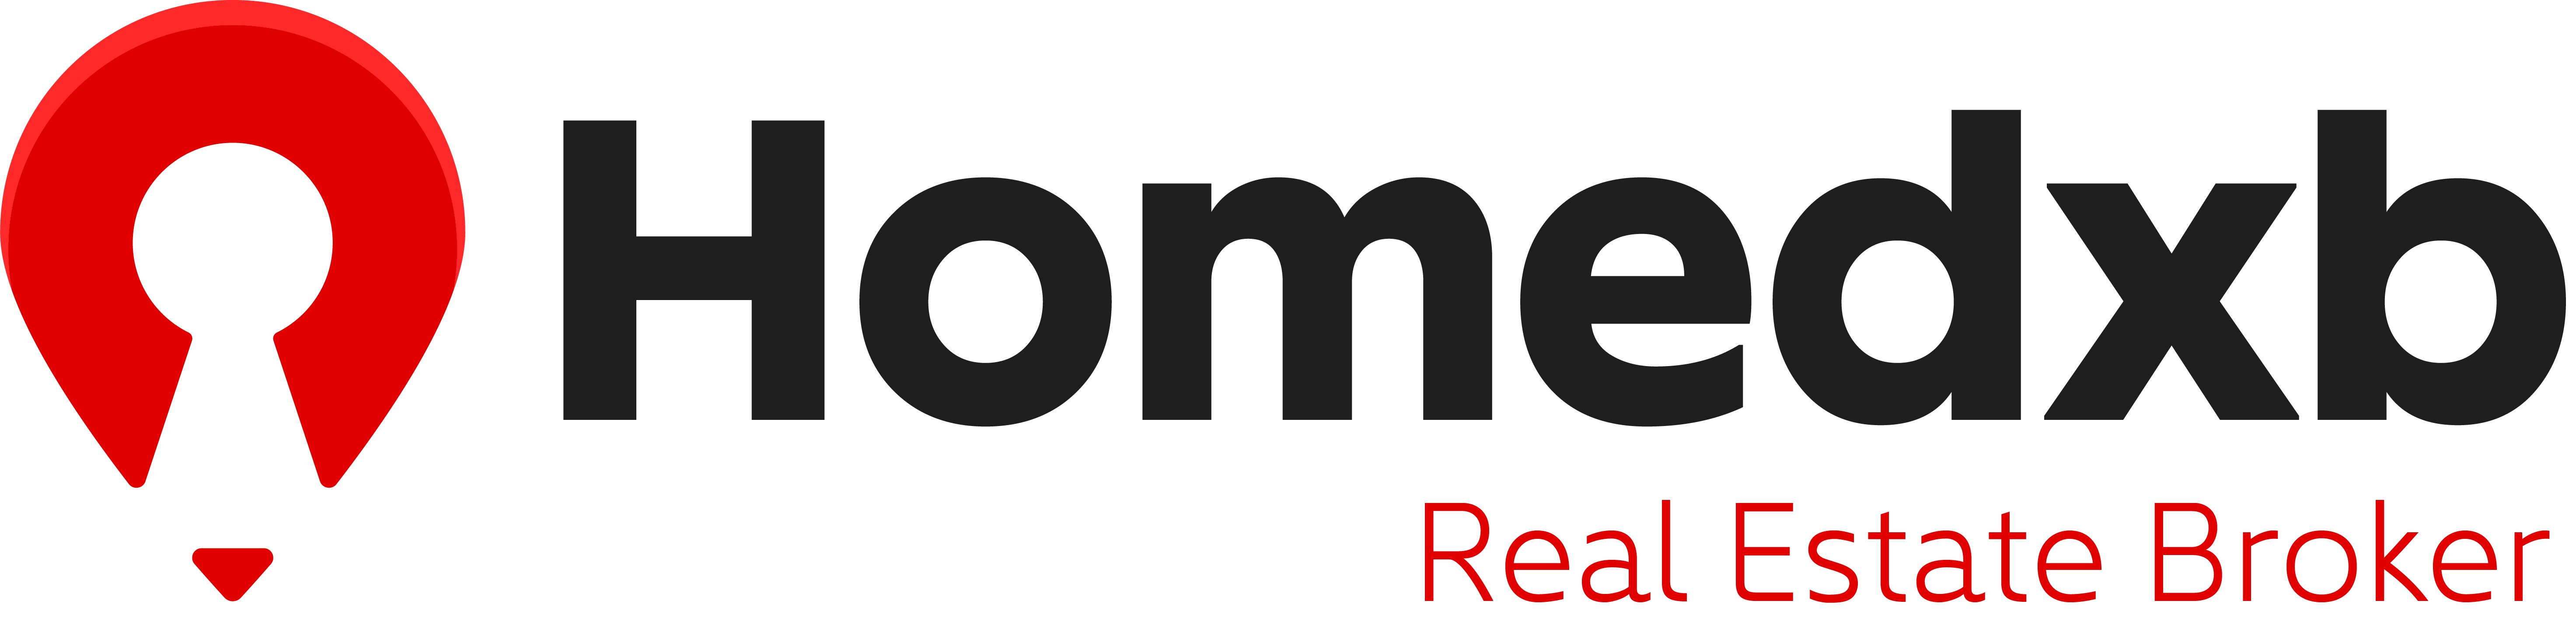 Homedxb.com Real Estate